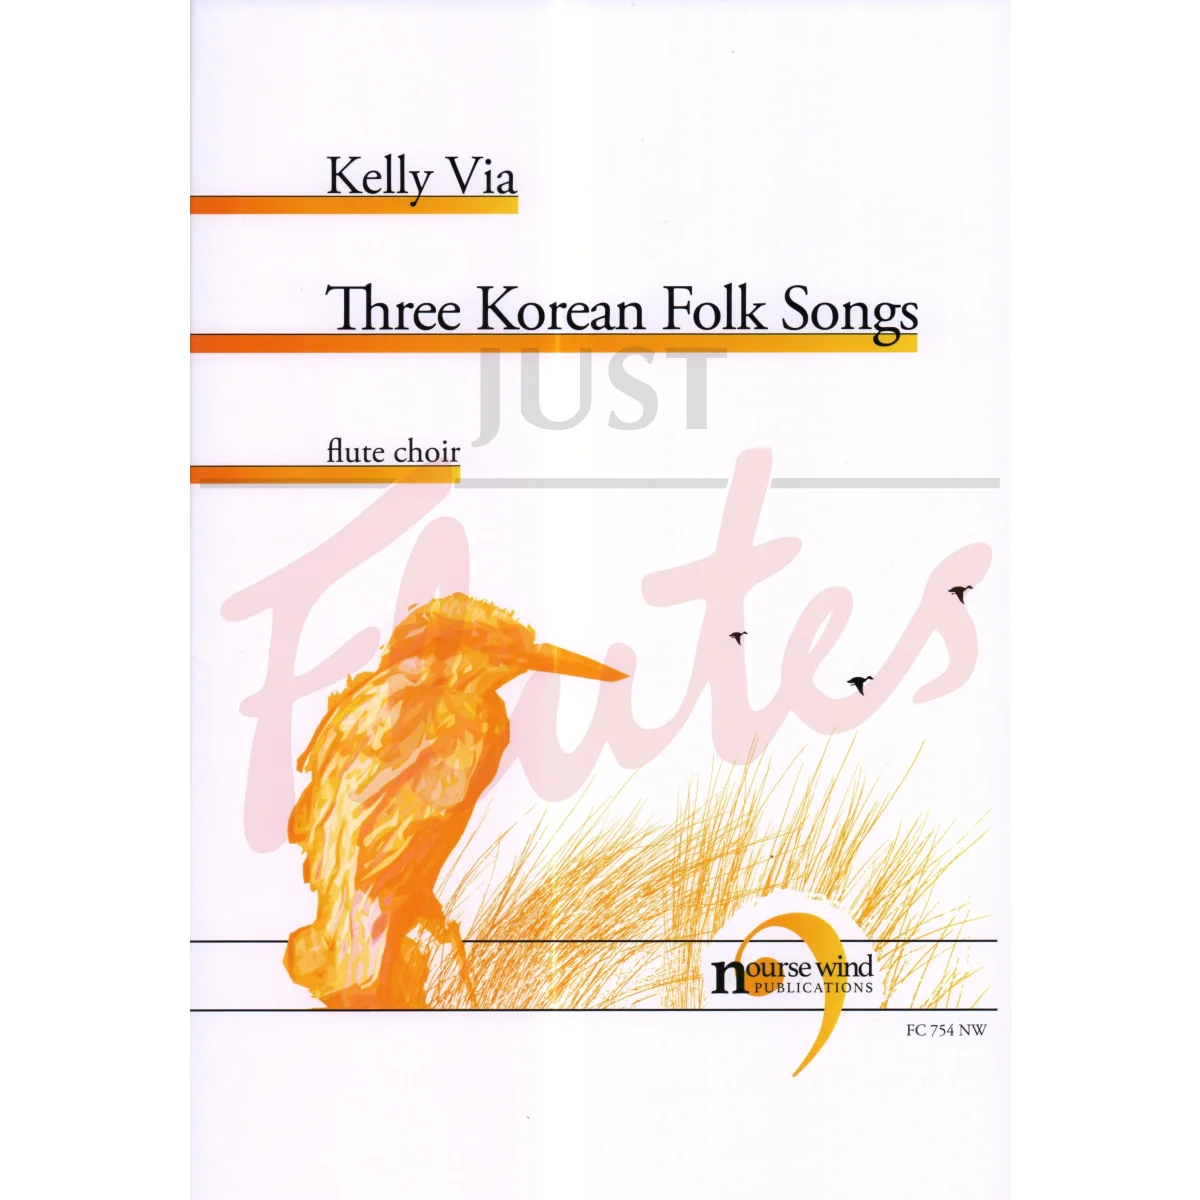 Three Korean Folk Songs for Flute Choir